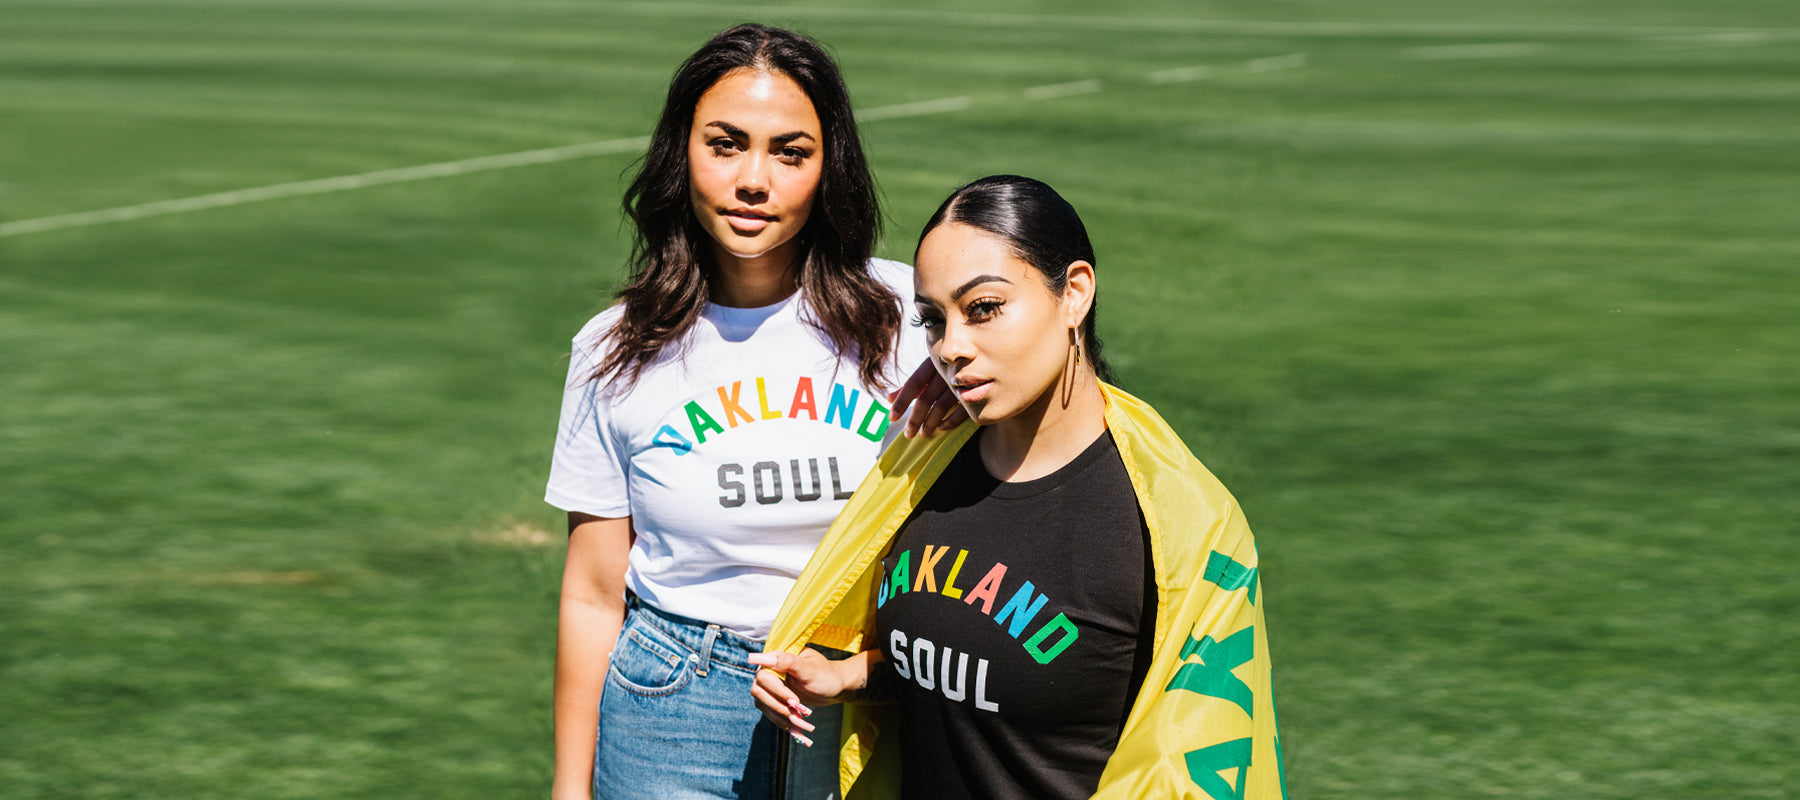 Two women standing on soccer field both wearing Oakland Soul Wordmark T-Shirts.